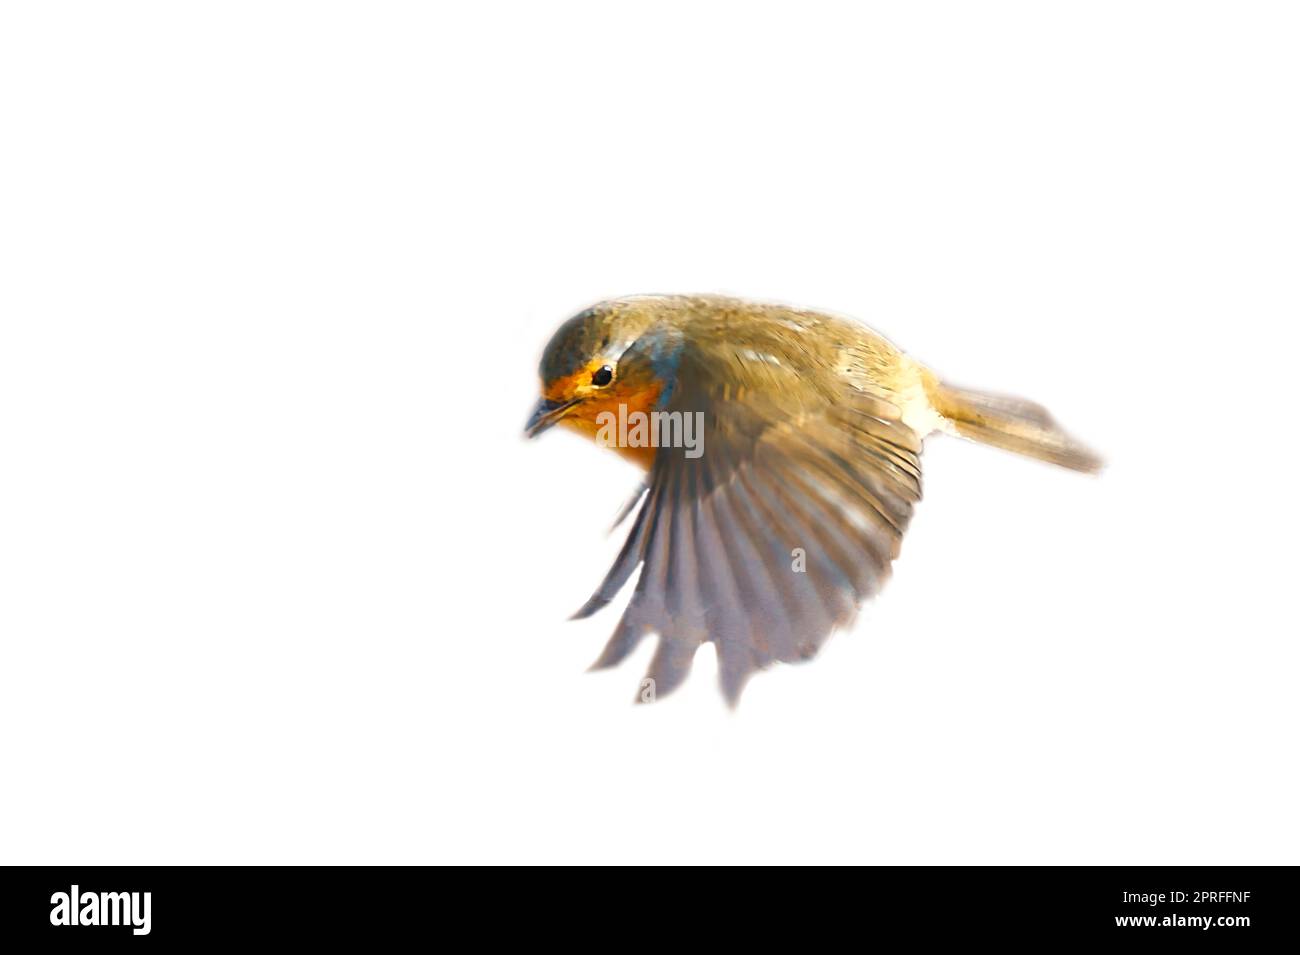 robin in der Flucht, isoliert, für die Bearbeitung zugeschnitten. Songbird mit rot-weiß-orangefarbenem Gefieder. Vogel aus der Natur Stockfoto